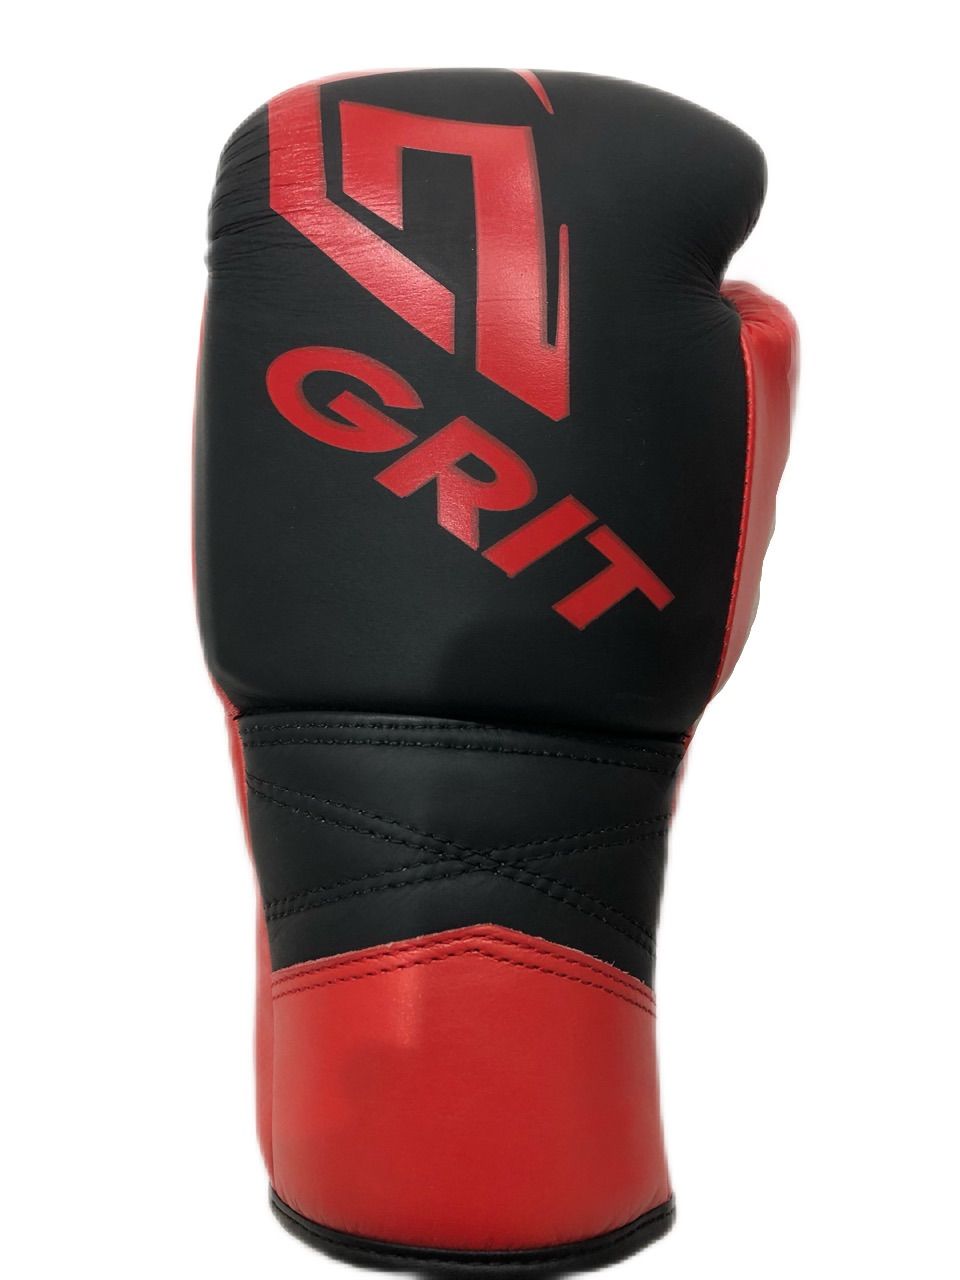 GRIT メタリック ボクシンググローブ レッド 紐式タイプ - メルカリ